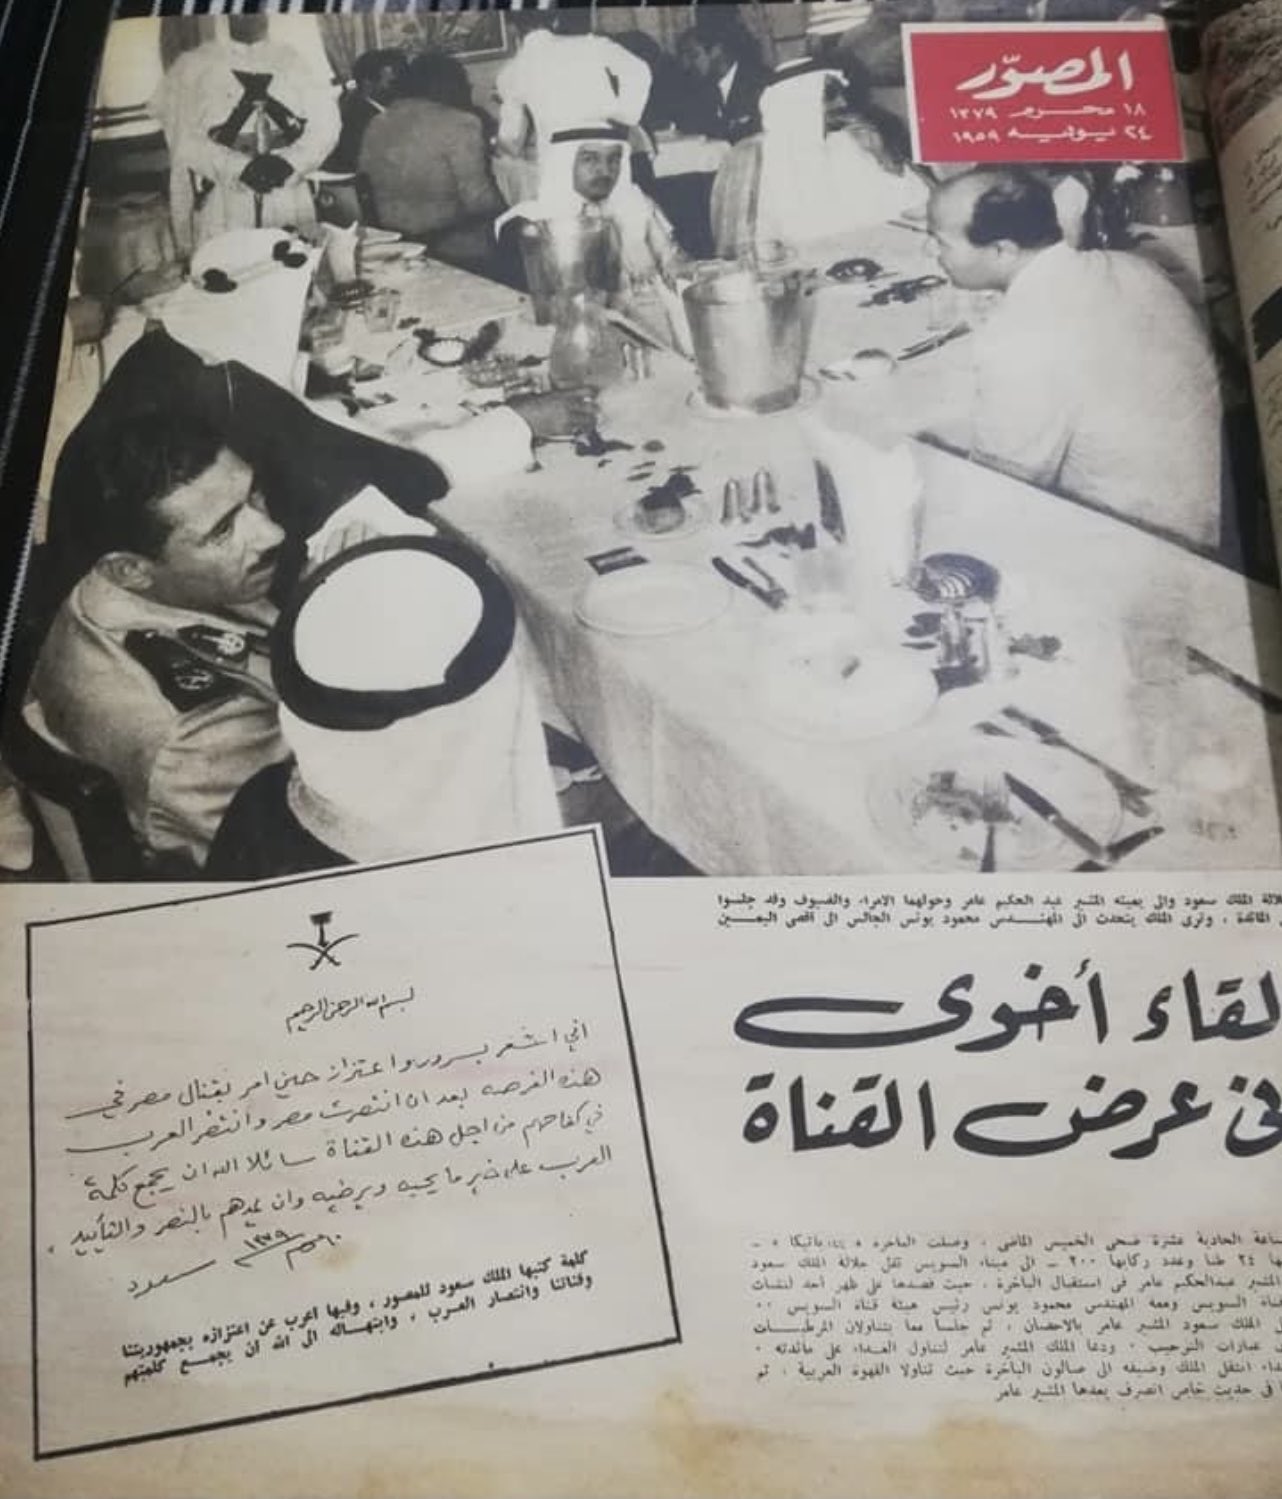 كلمة الملك سعود لمجلة المصور 1959.jpg